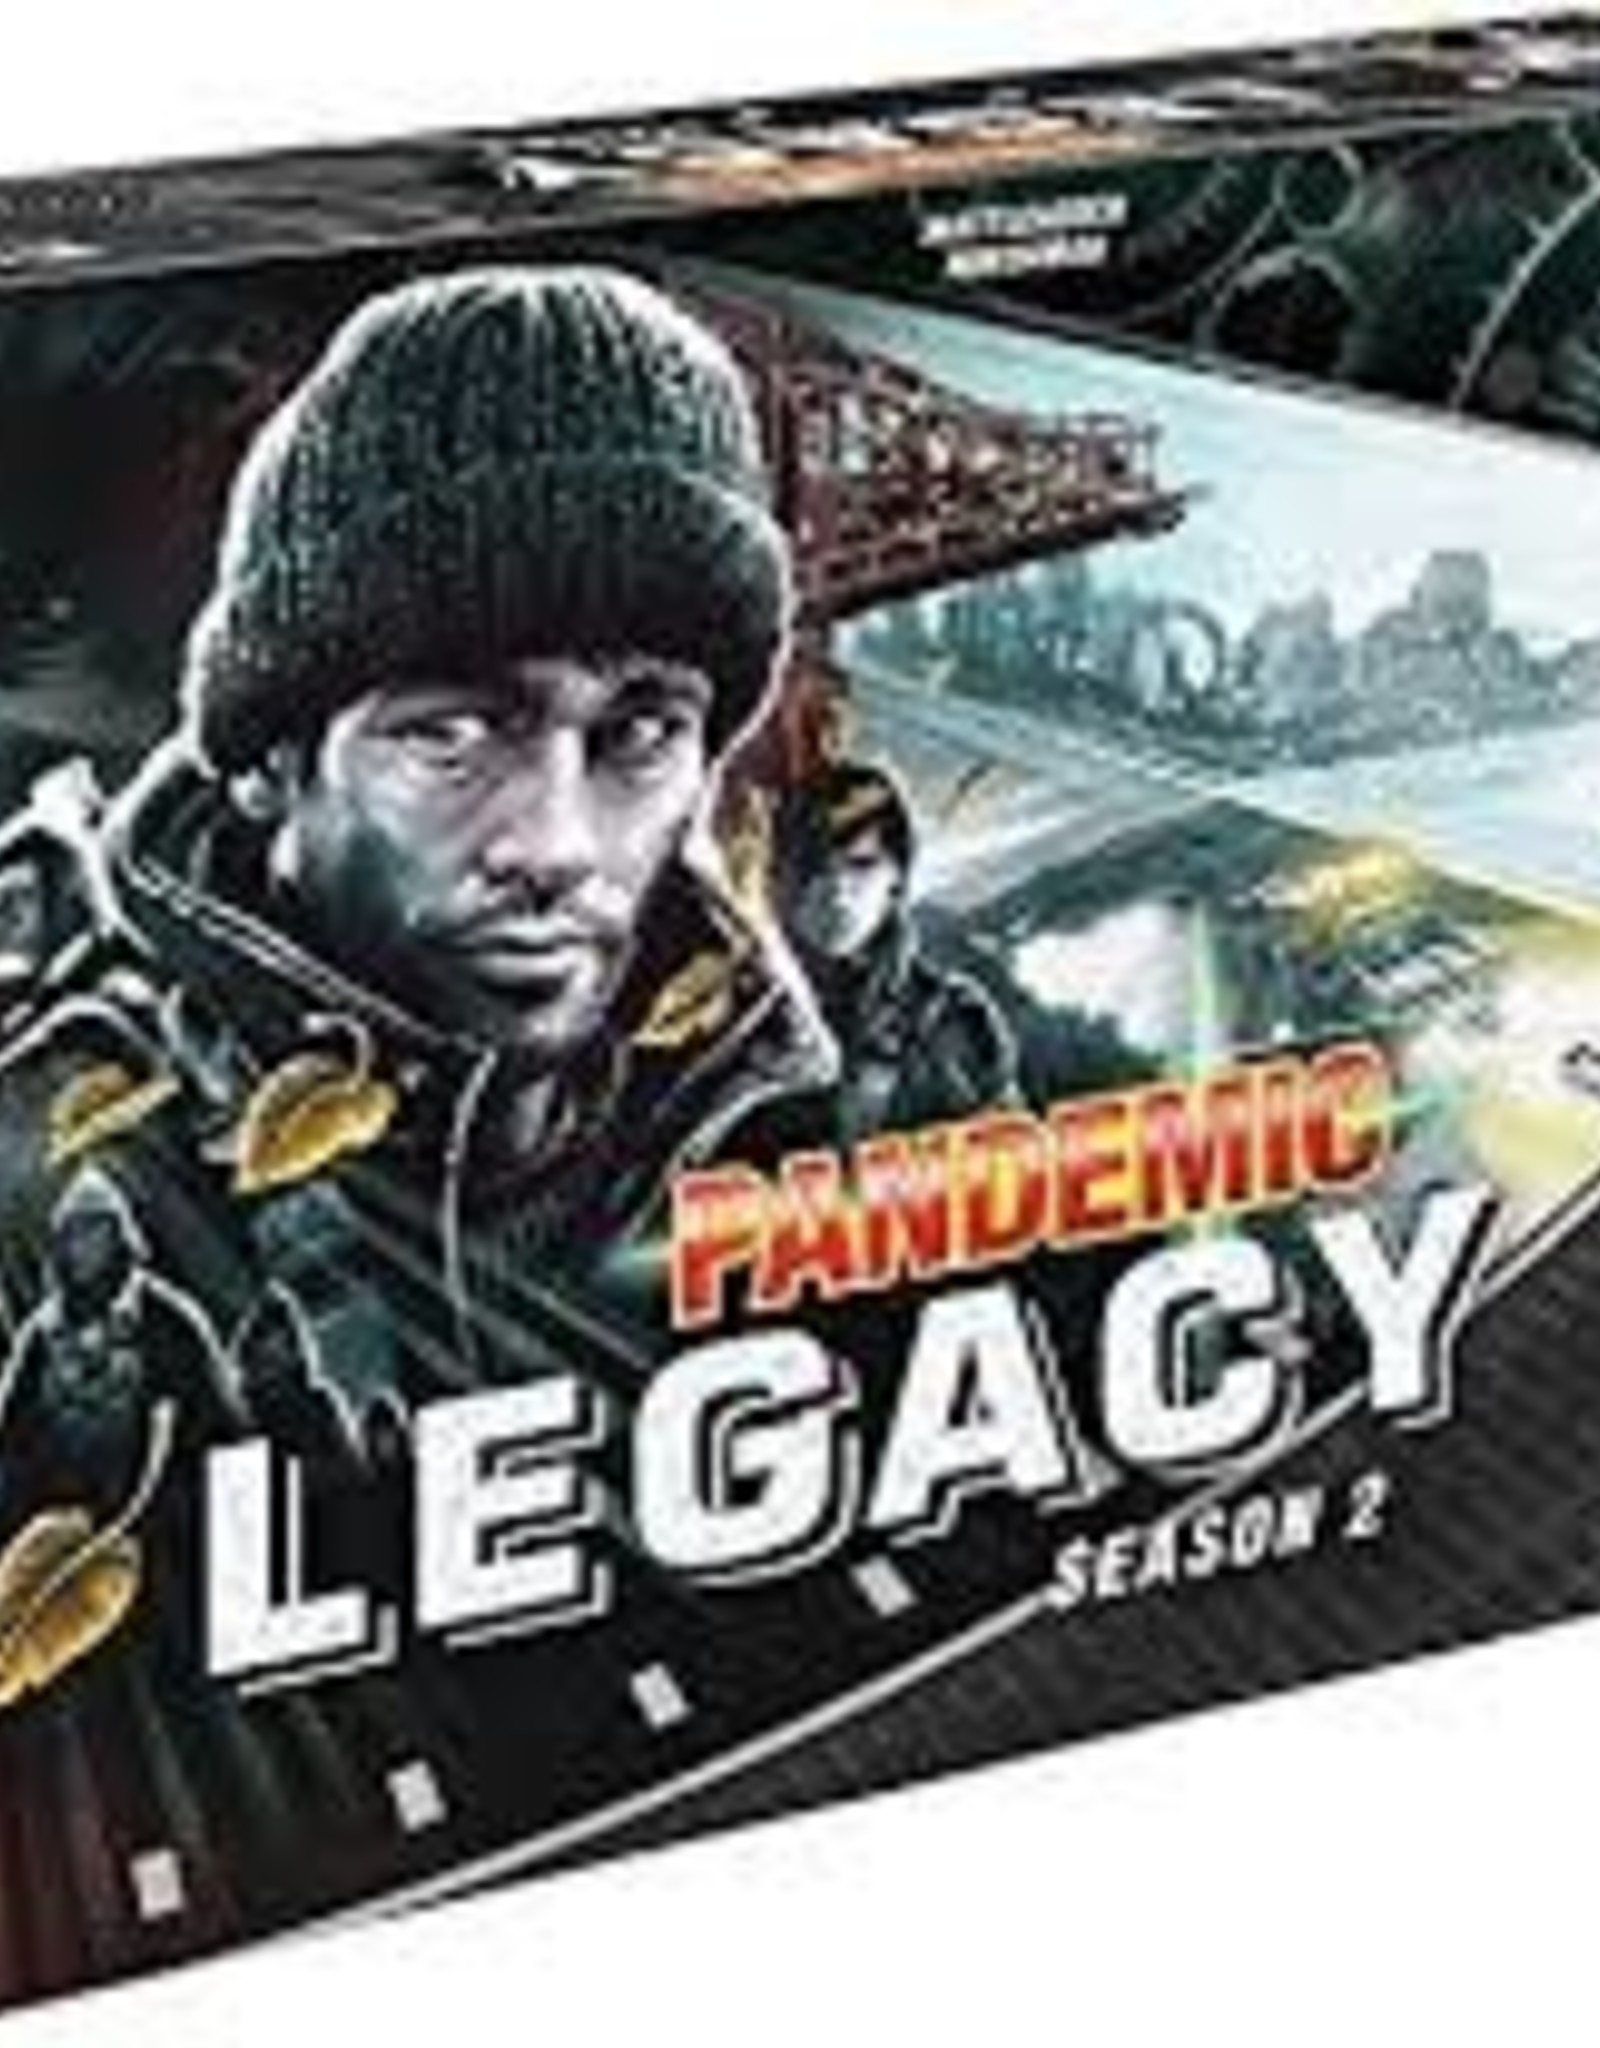 Z-Man Games PANDEMIC LEGACY - S2 BLACK EDITION